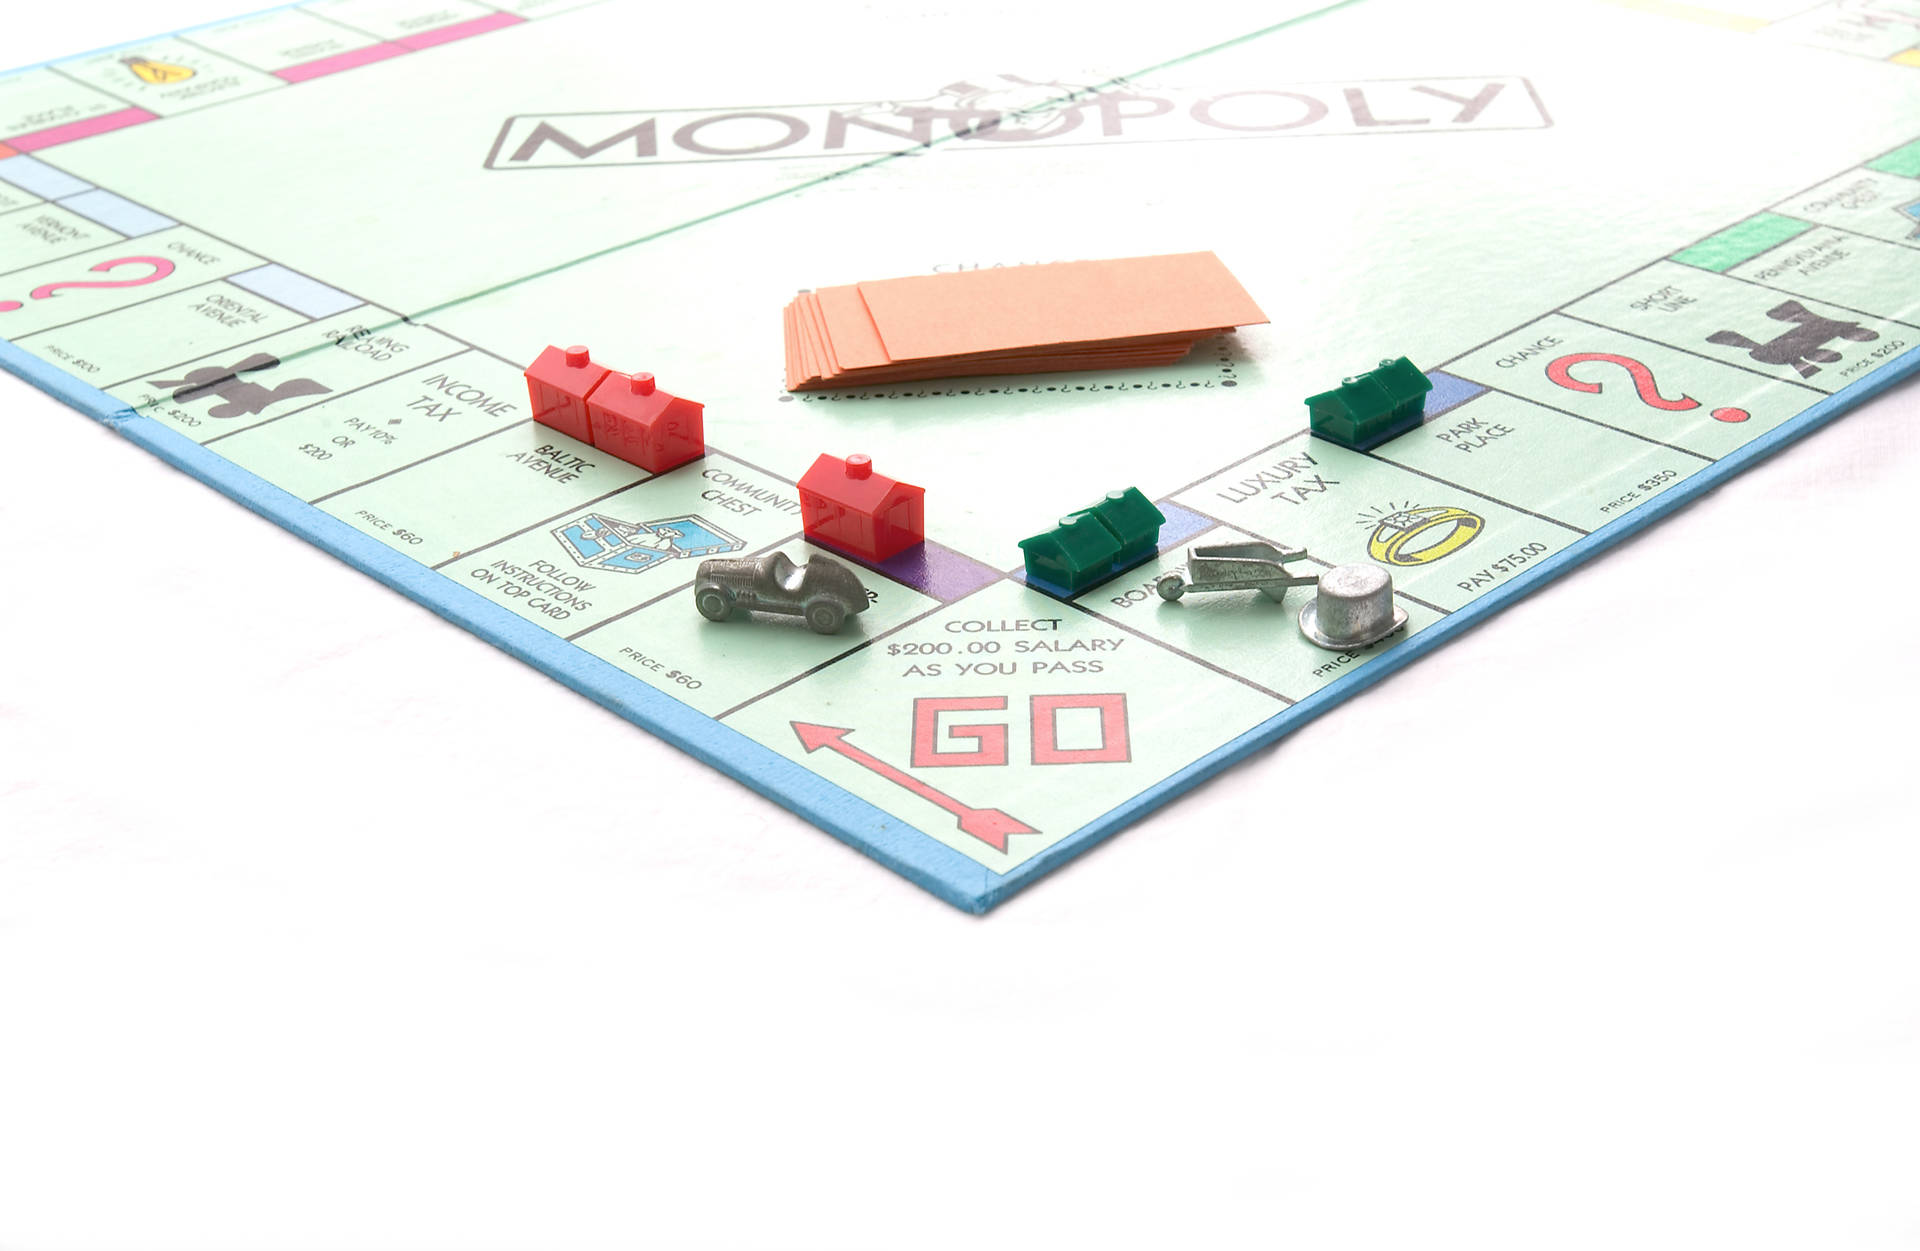 Monopolyspiel Klassische Spielfiguren Wallpaper